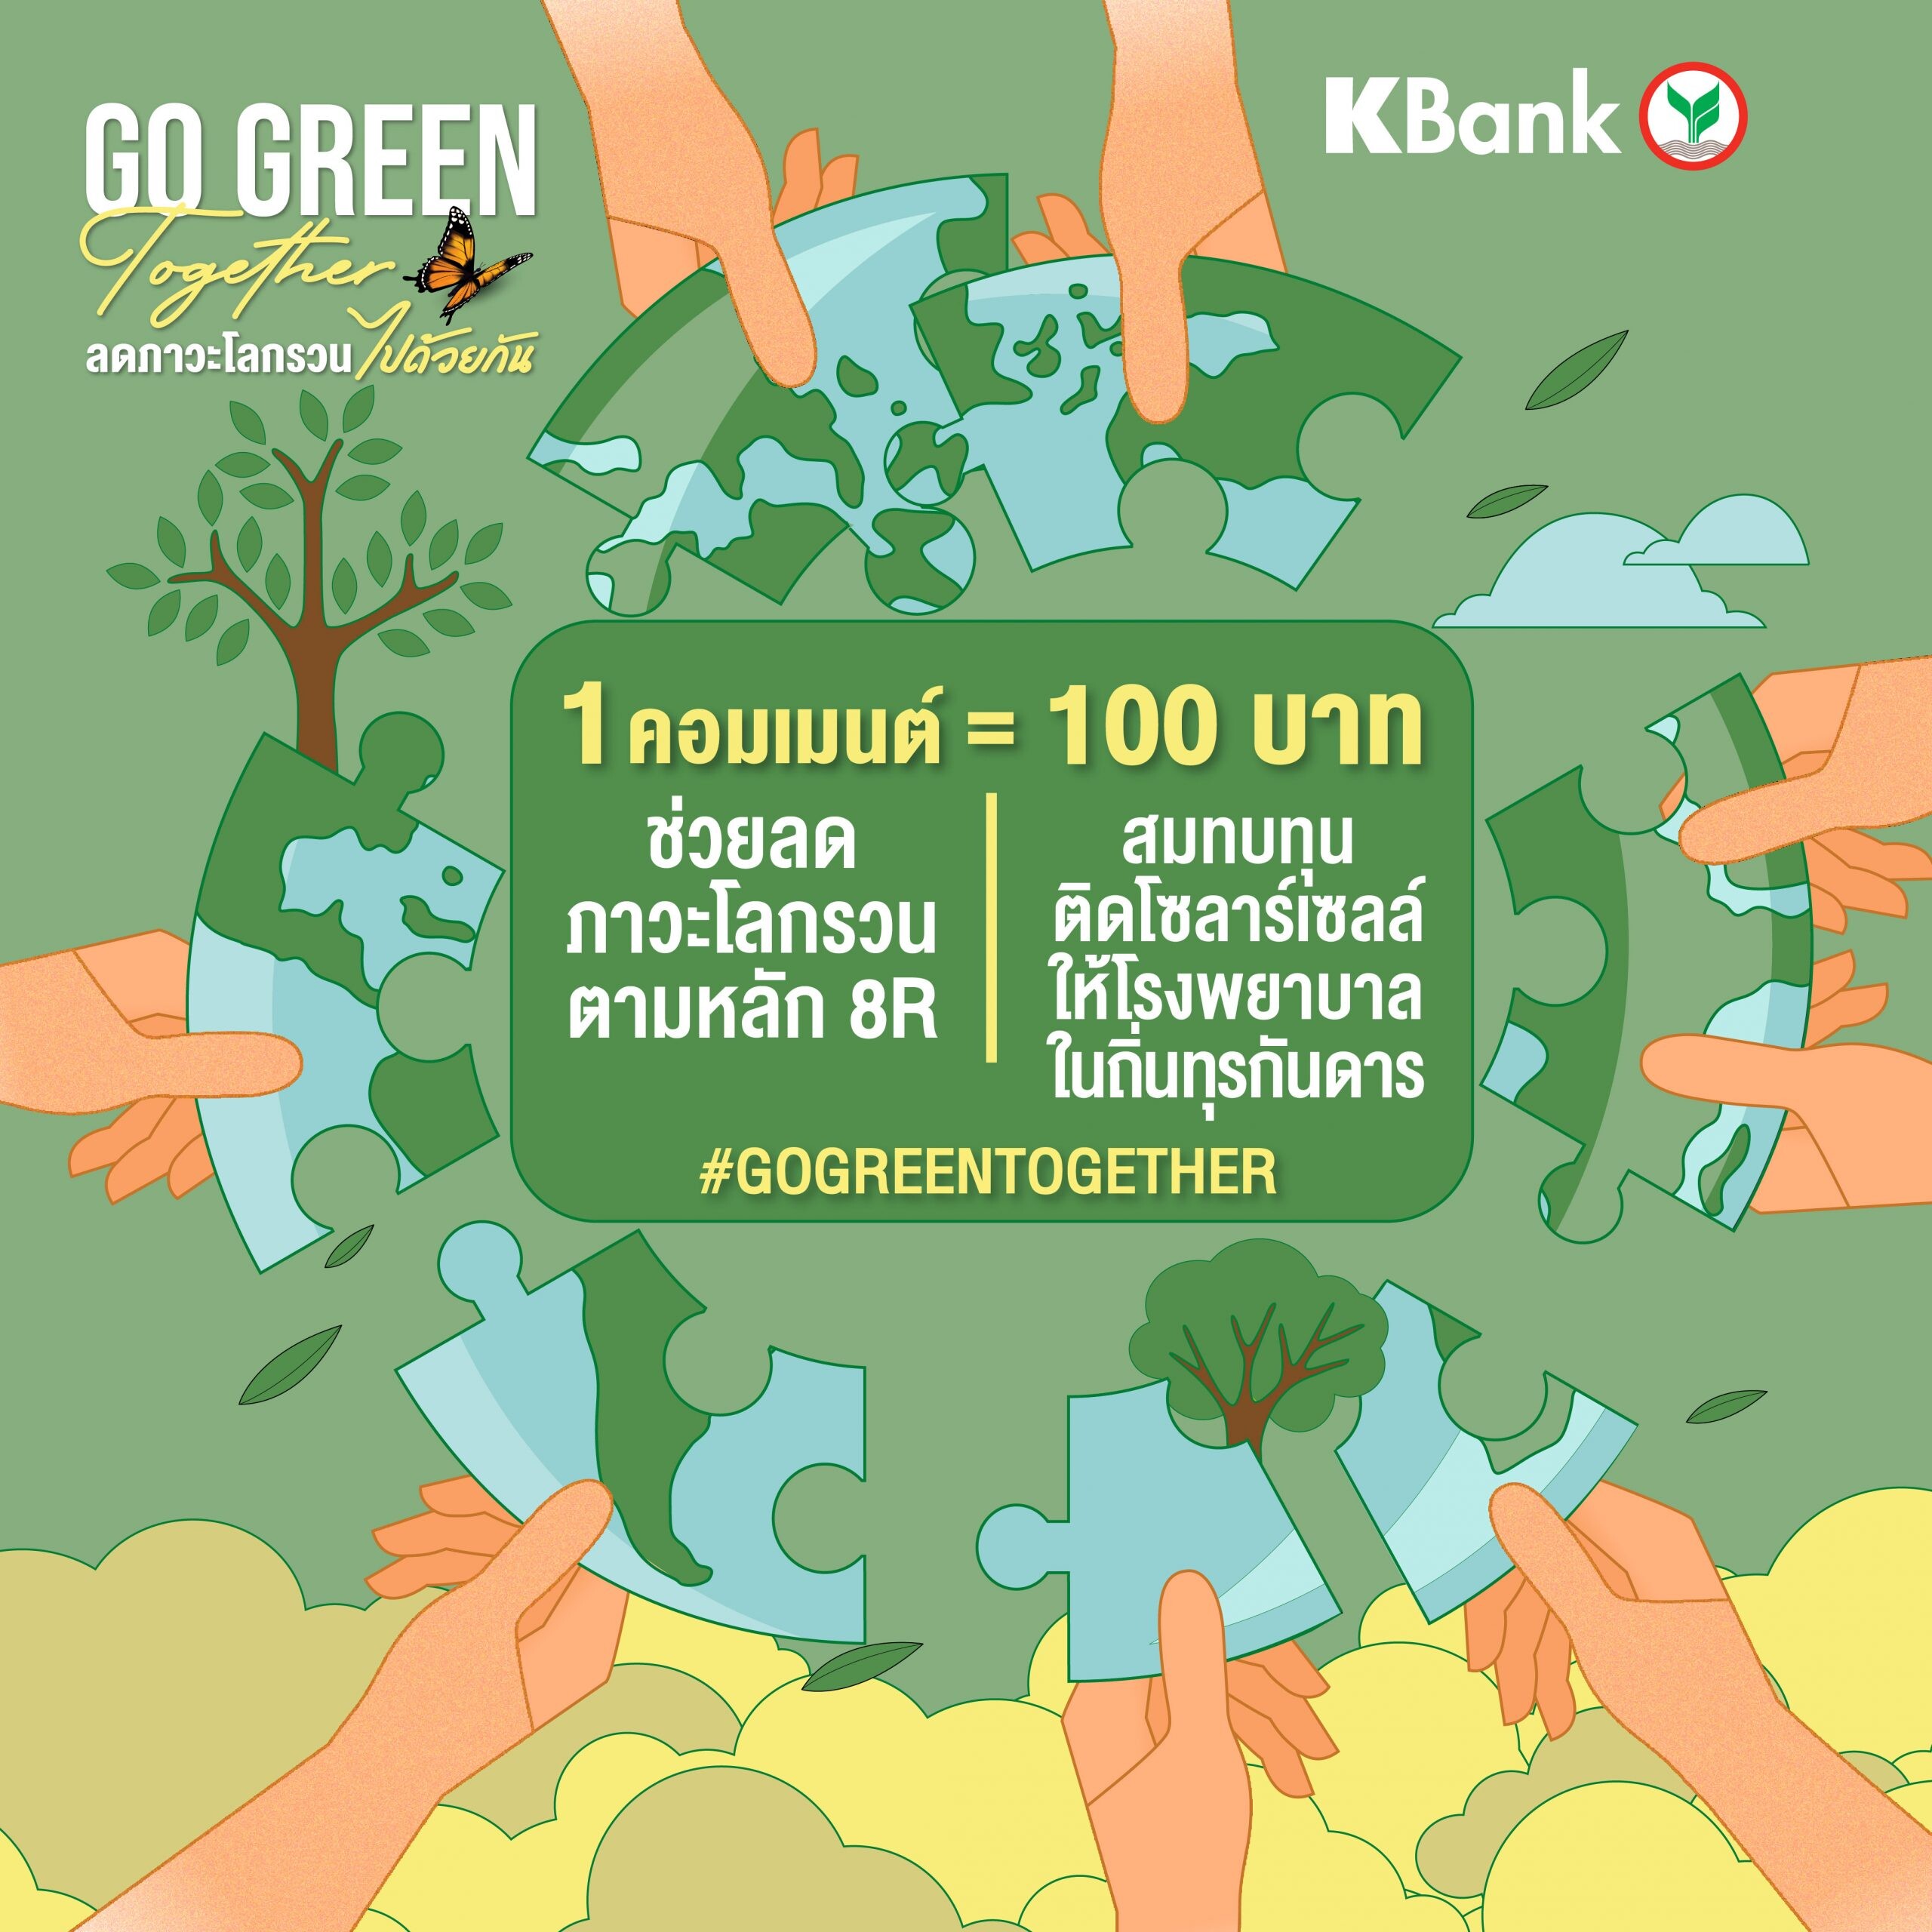 กสิกรไทย ชวนคนไทย "GO GREEN TOGETHER ลดภาวะโลกรวนไปด้วยกัน" 1 คอมเมนต์ไลฟ์สไตล์กรีน เท่ากับ 100 บาท สมทบทุนติดโซลาร์เซลล์ รพ.ถิ่นทุรกันดาร